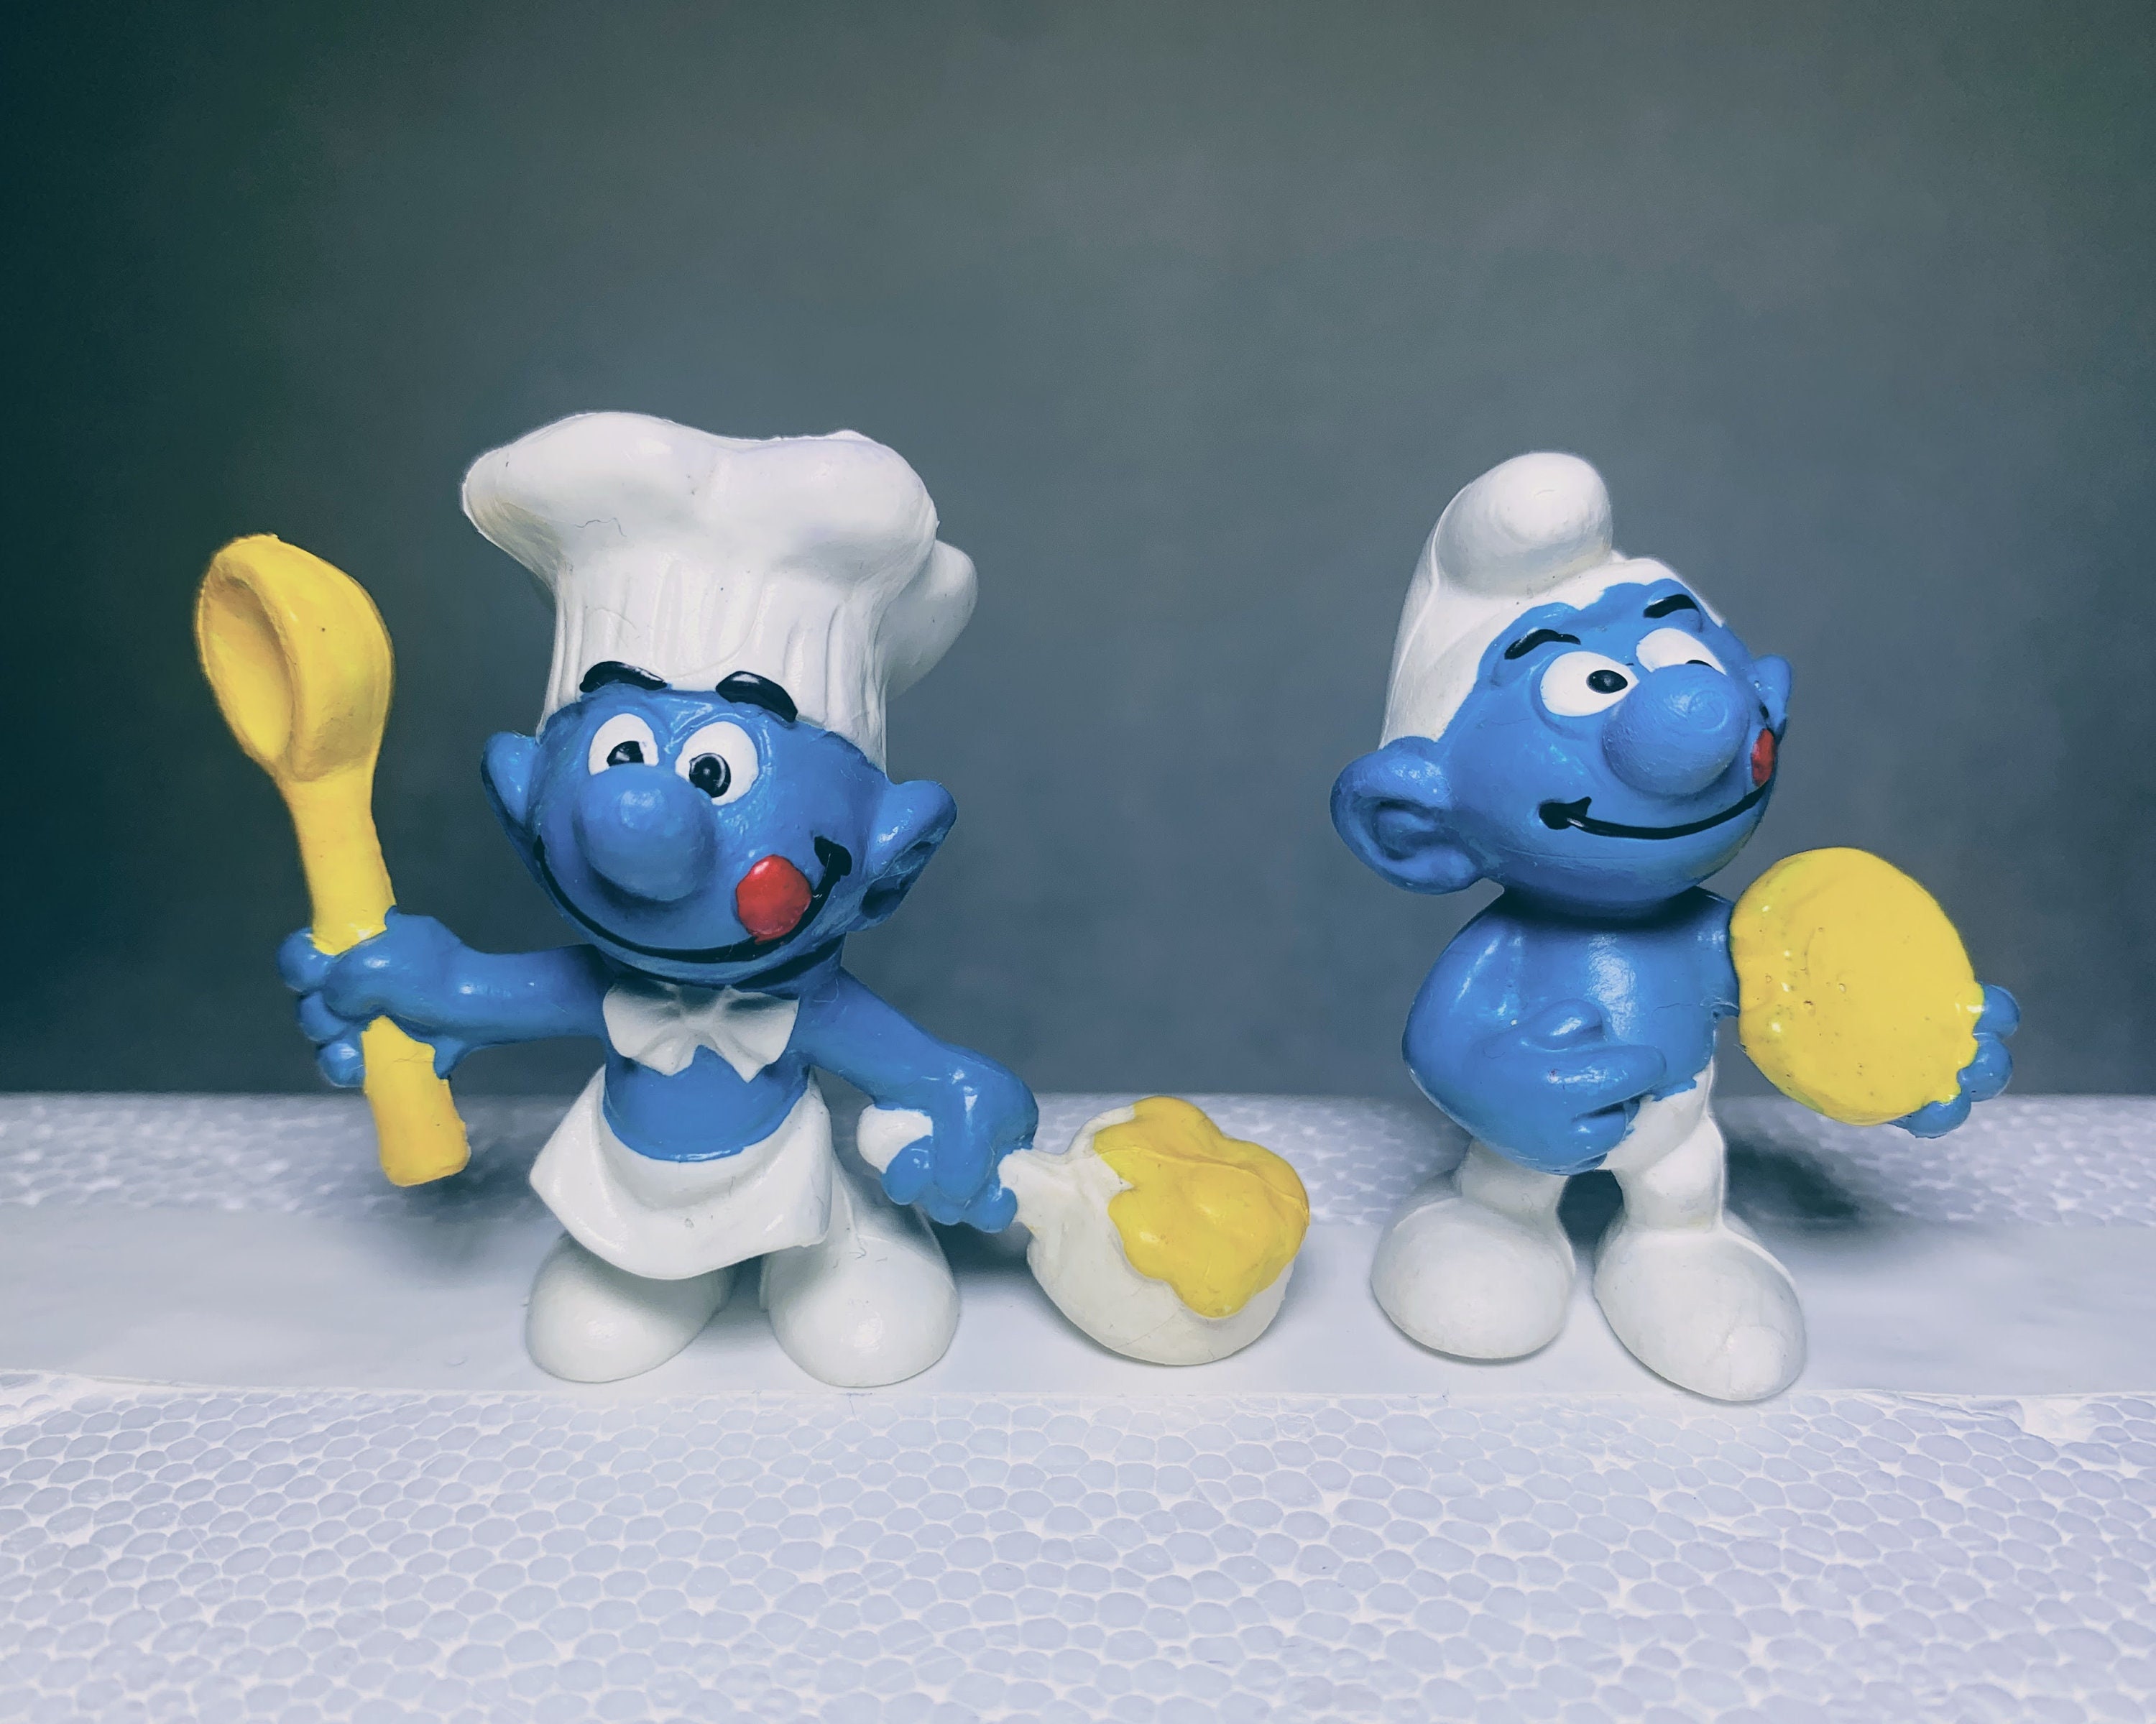  Smurfs Chef Basic Plush Toy : Toys & Games